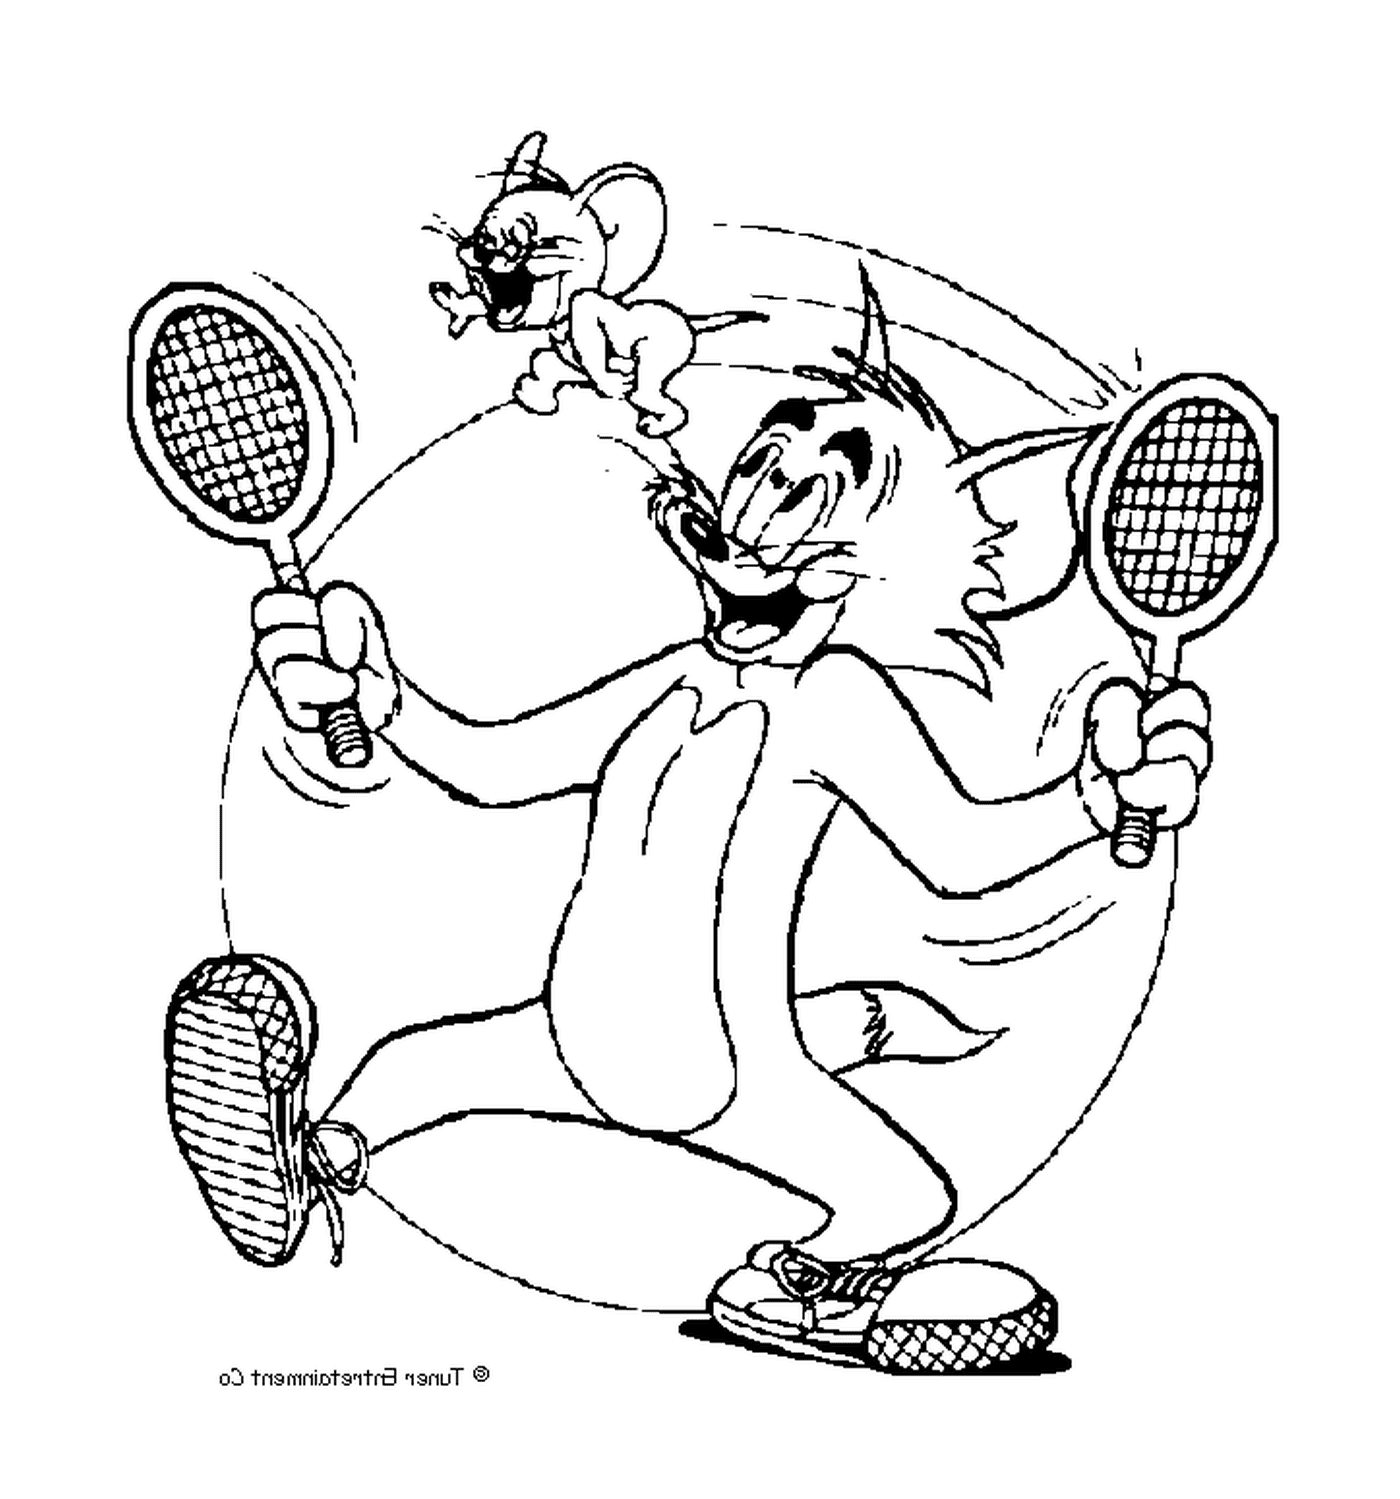  Tom juega al tenis con Jerry 